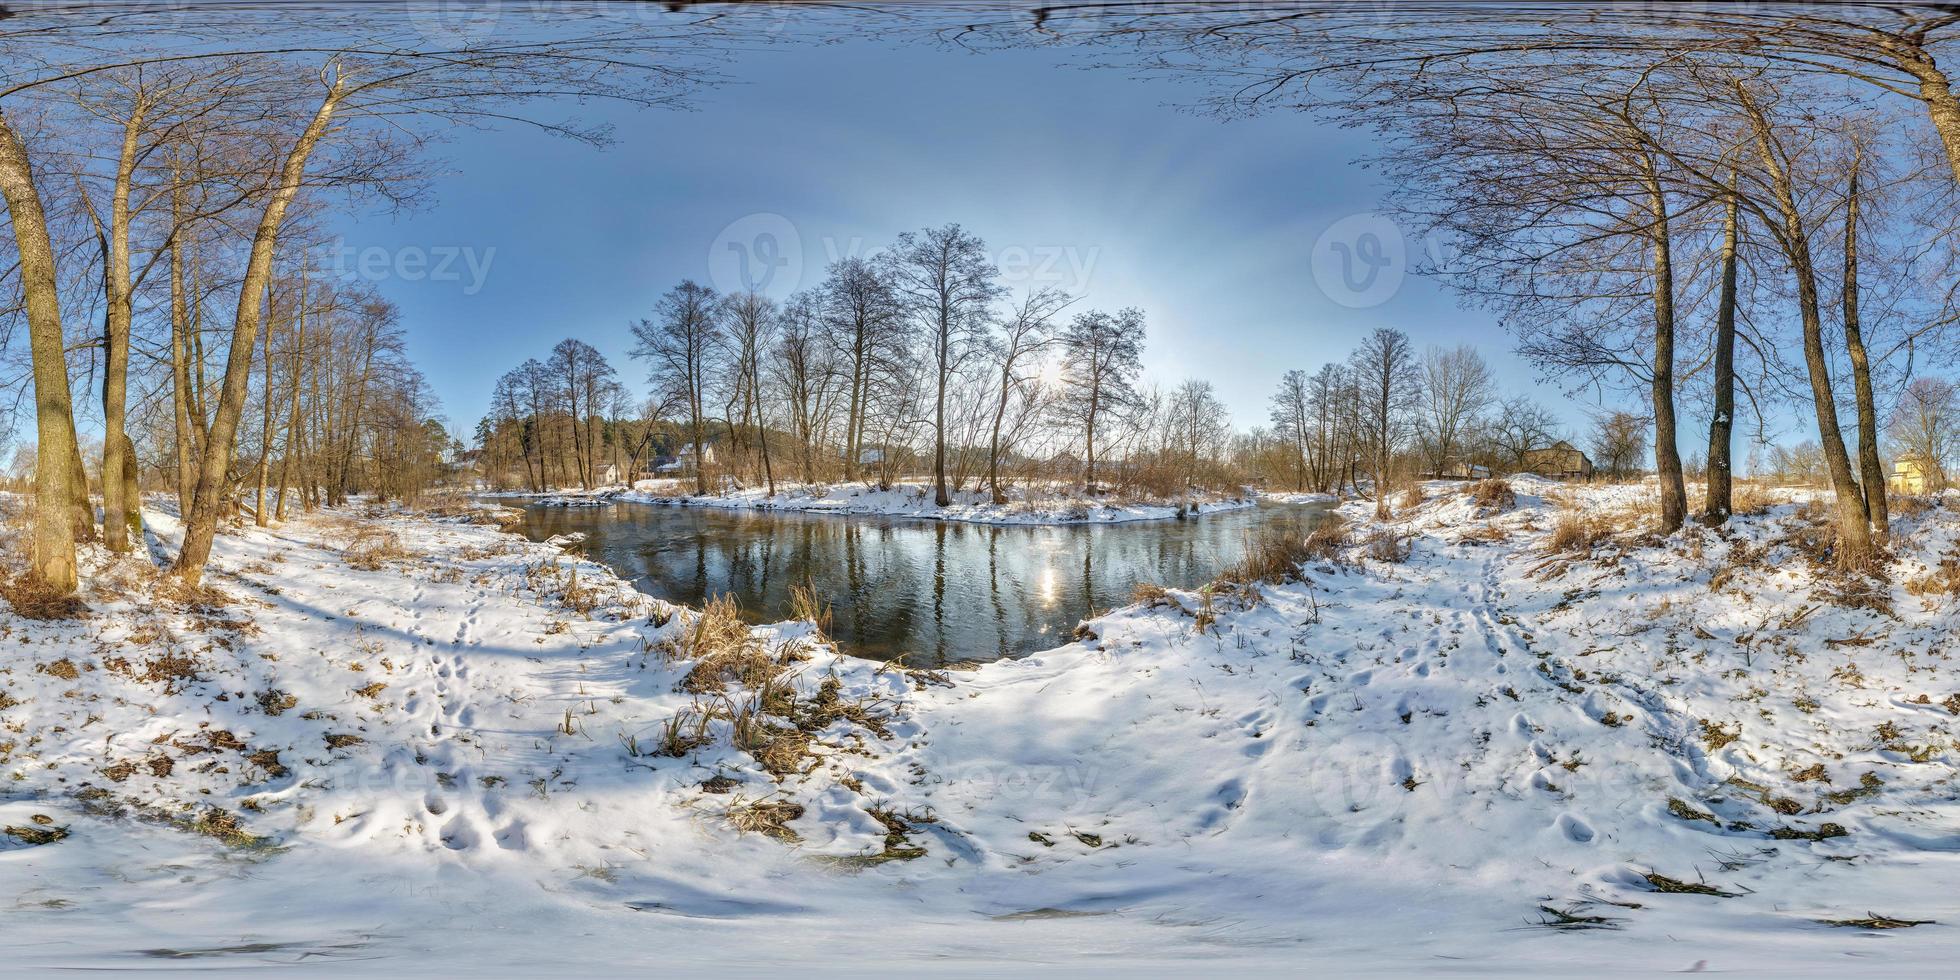 volledig naadloos bolvormig panorama 360 graden hoekweergave in de buurt van smalle snelle rivier in een zonnige winteravond. 360 panorama in equirectangular projectie. vr ar virtual reality-inhoud foto